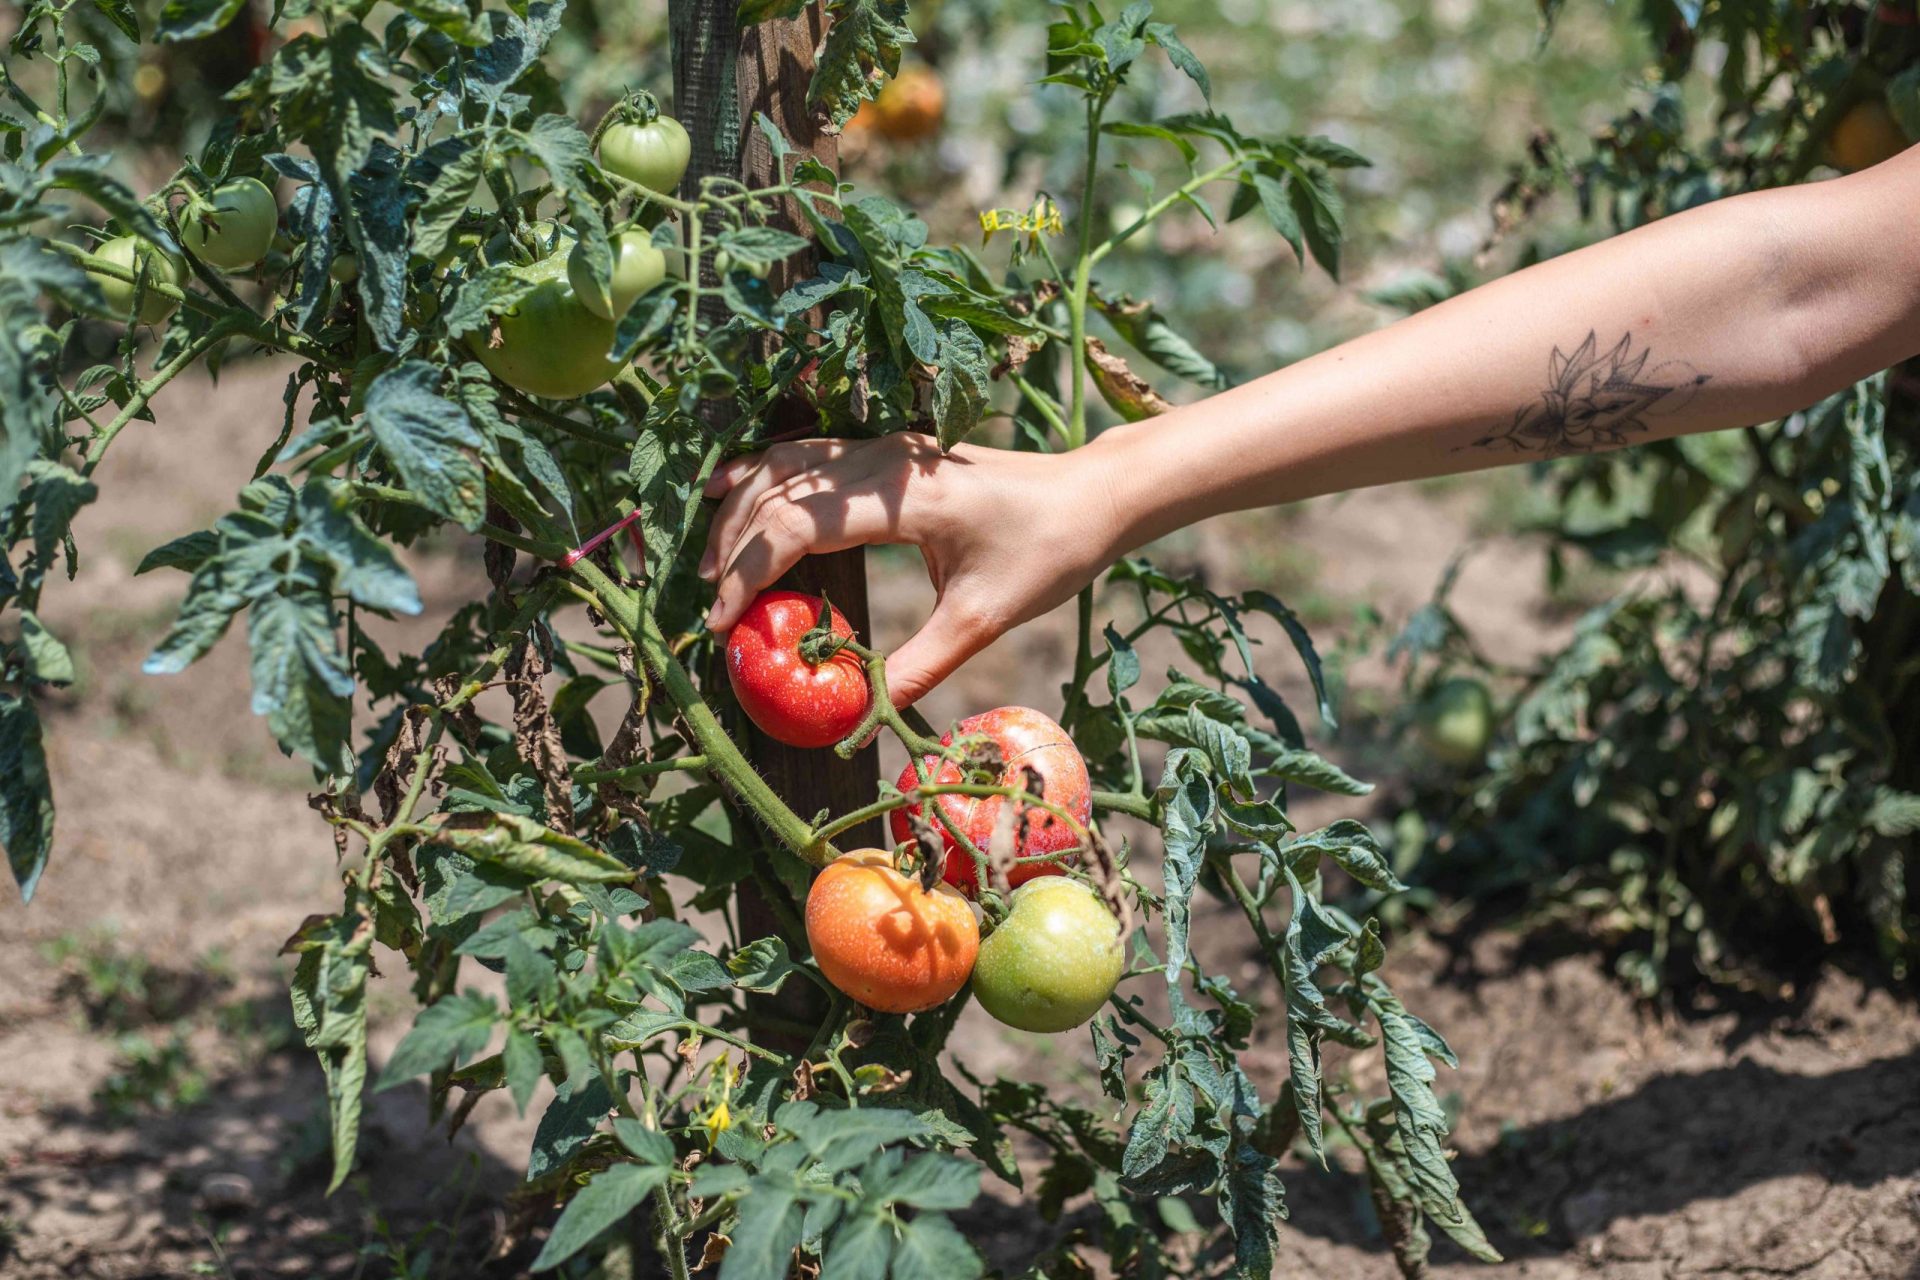 la mano se extiende para arrancar tomates rojos maduros de la planta de tomate que crece en el jardín